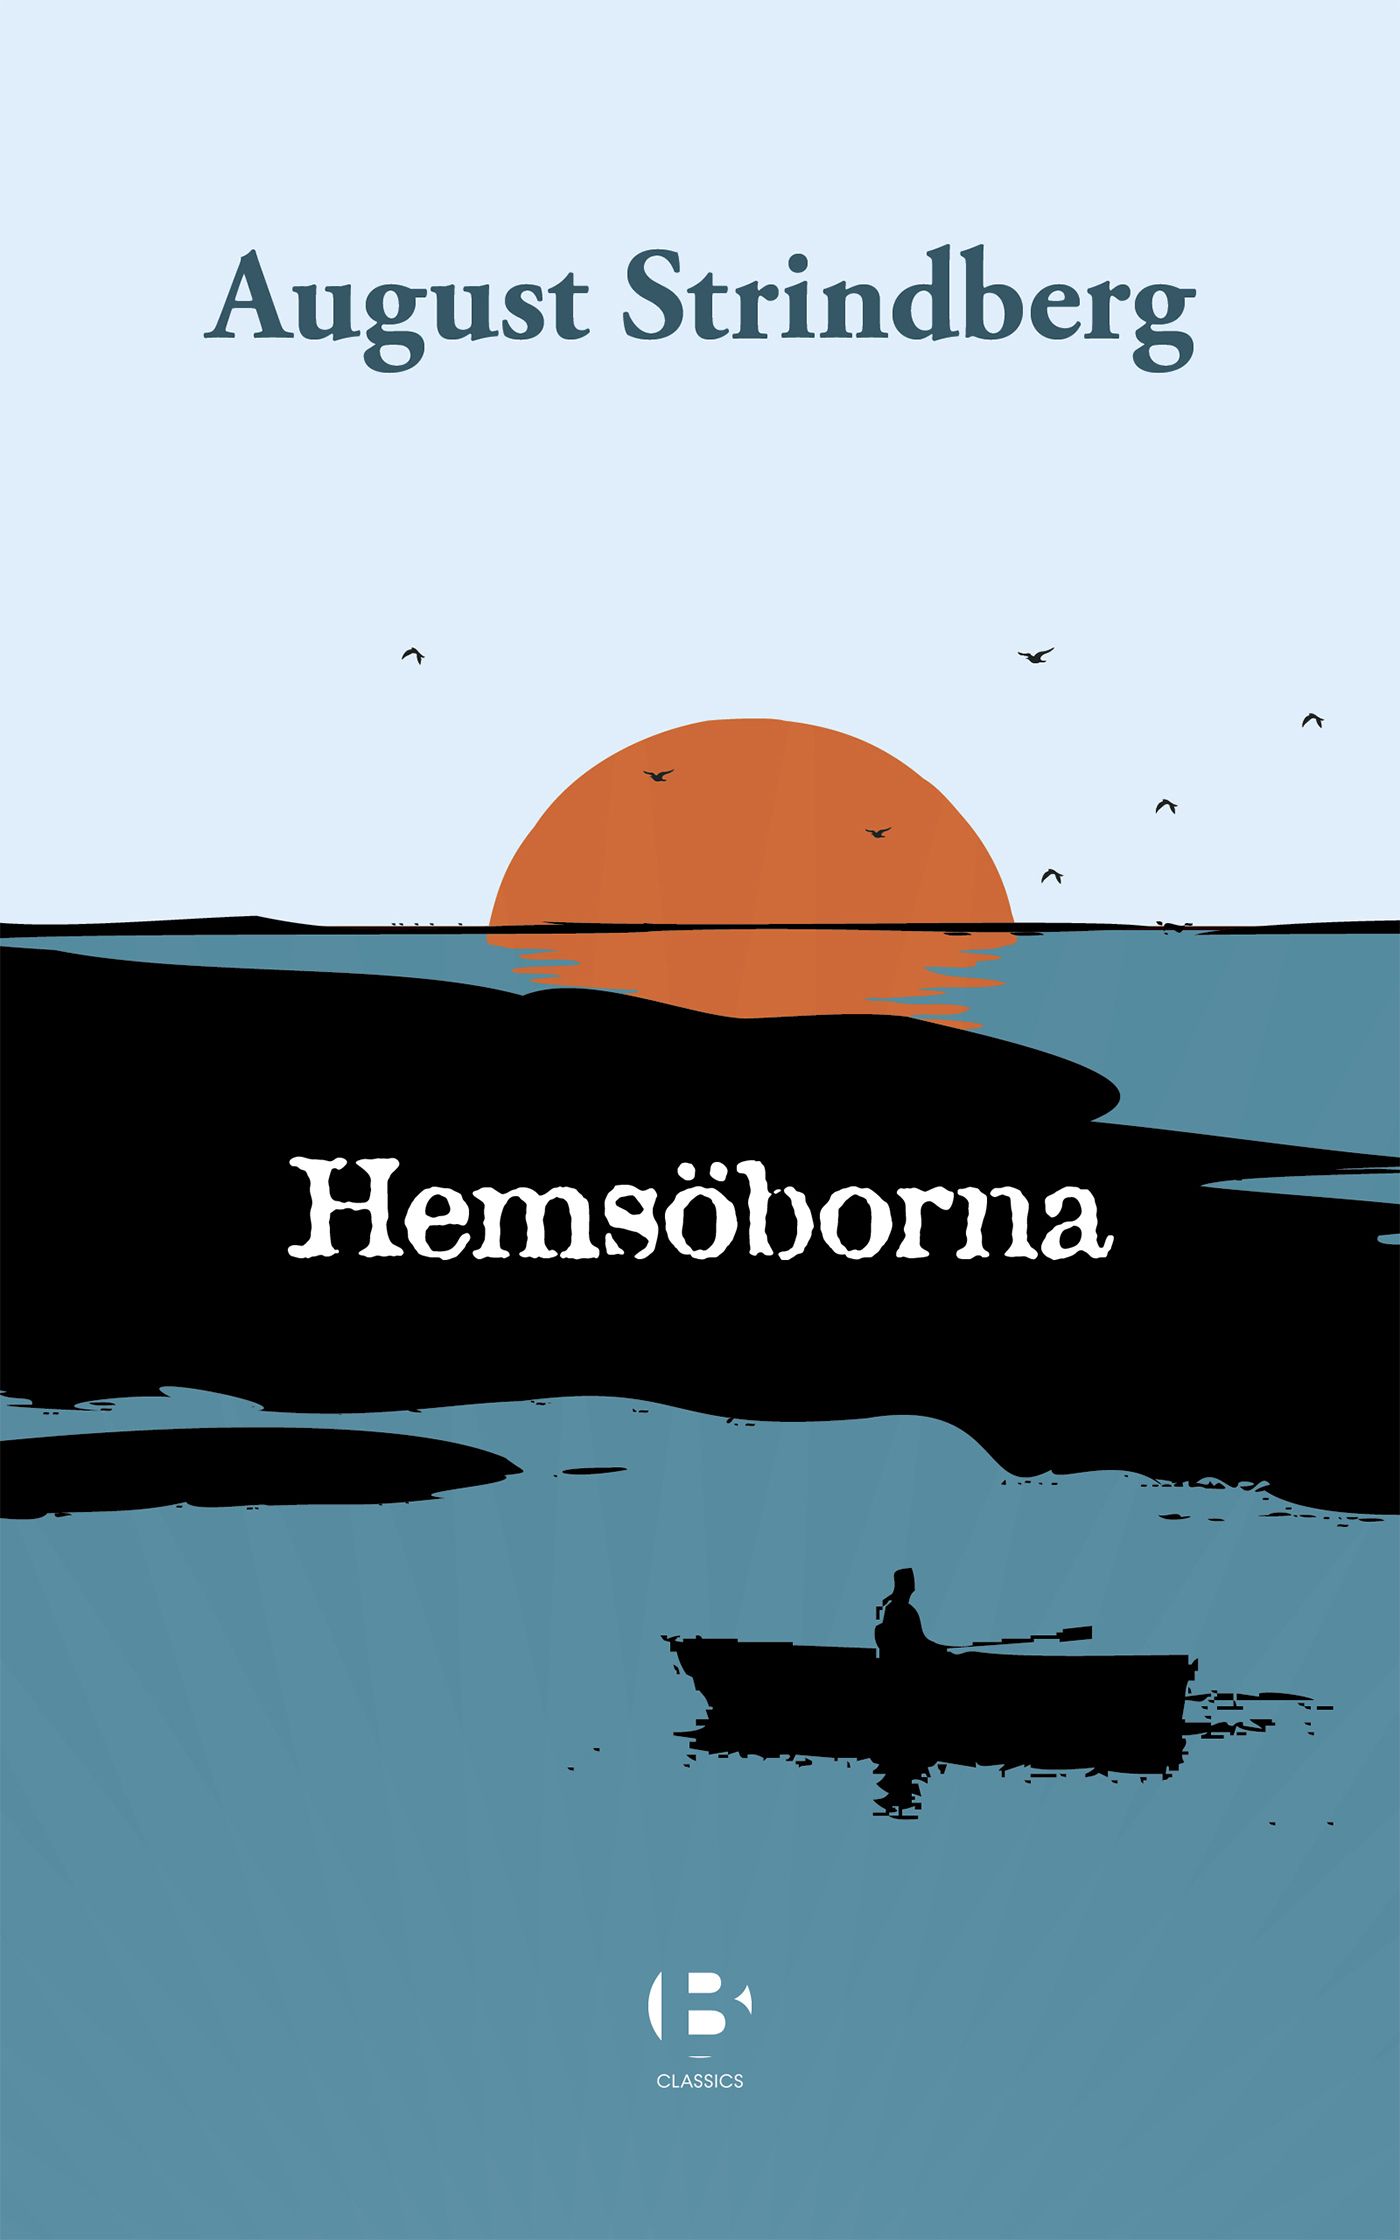 Hemsöborna, eBook by August Strindberg